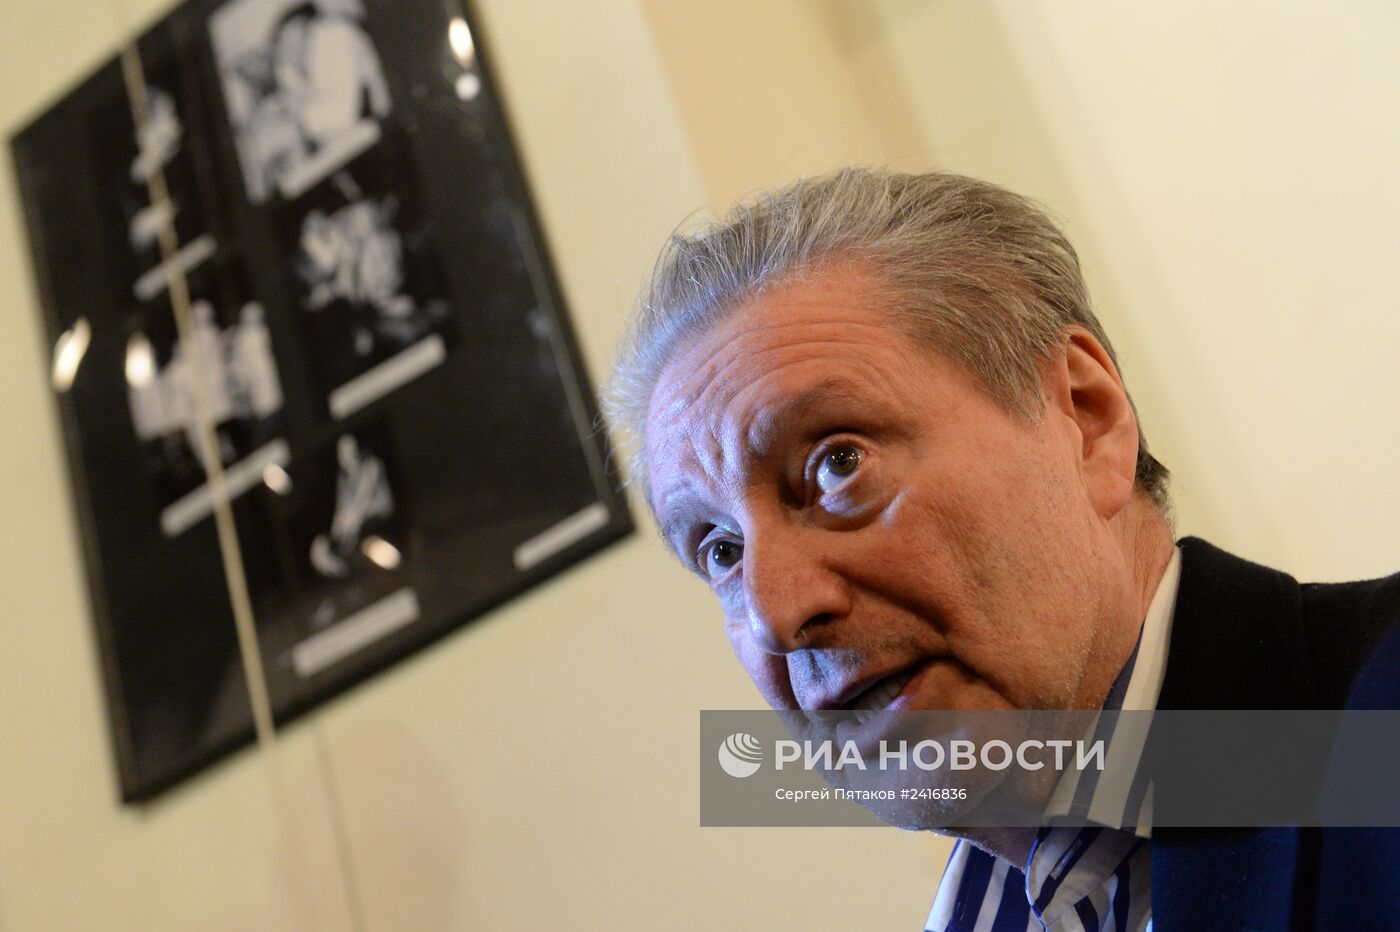 50-летний юбилей Московского Театра на Таганке